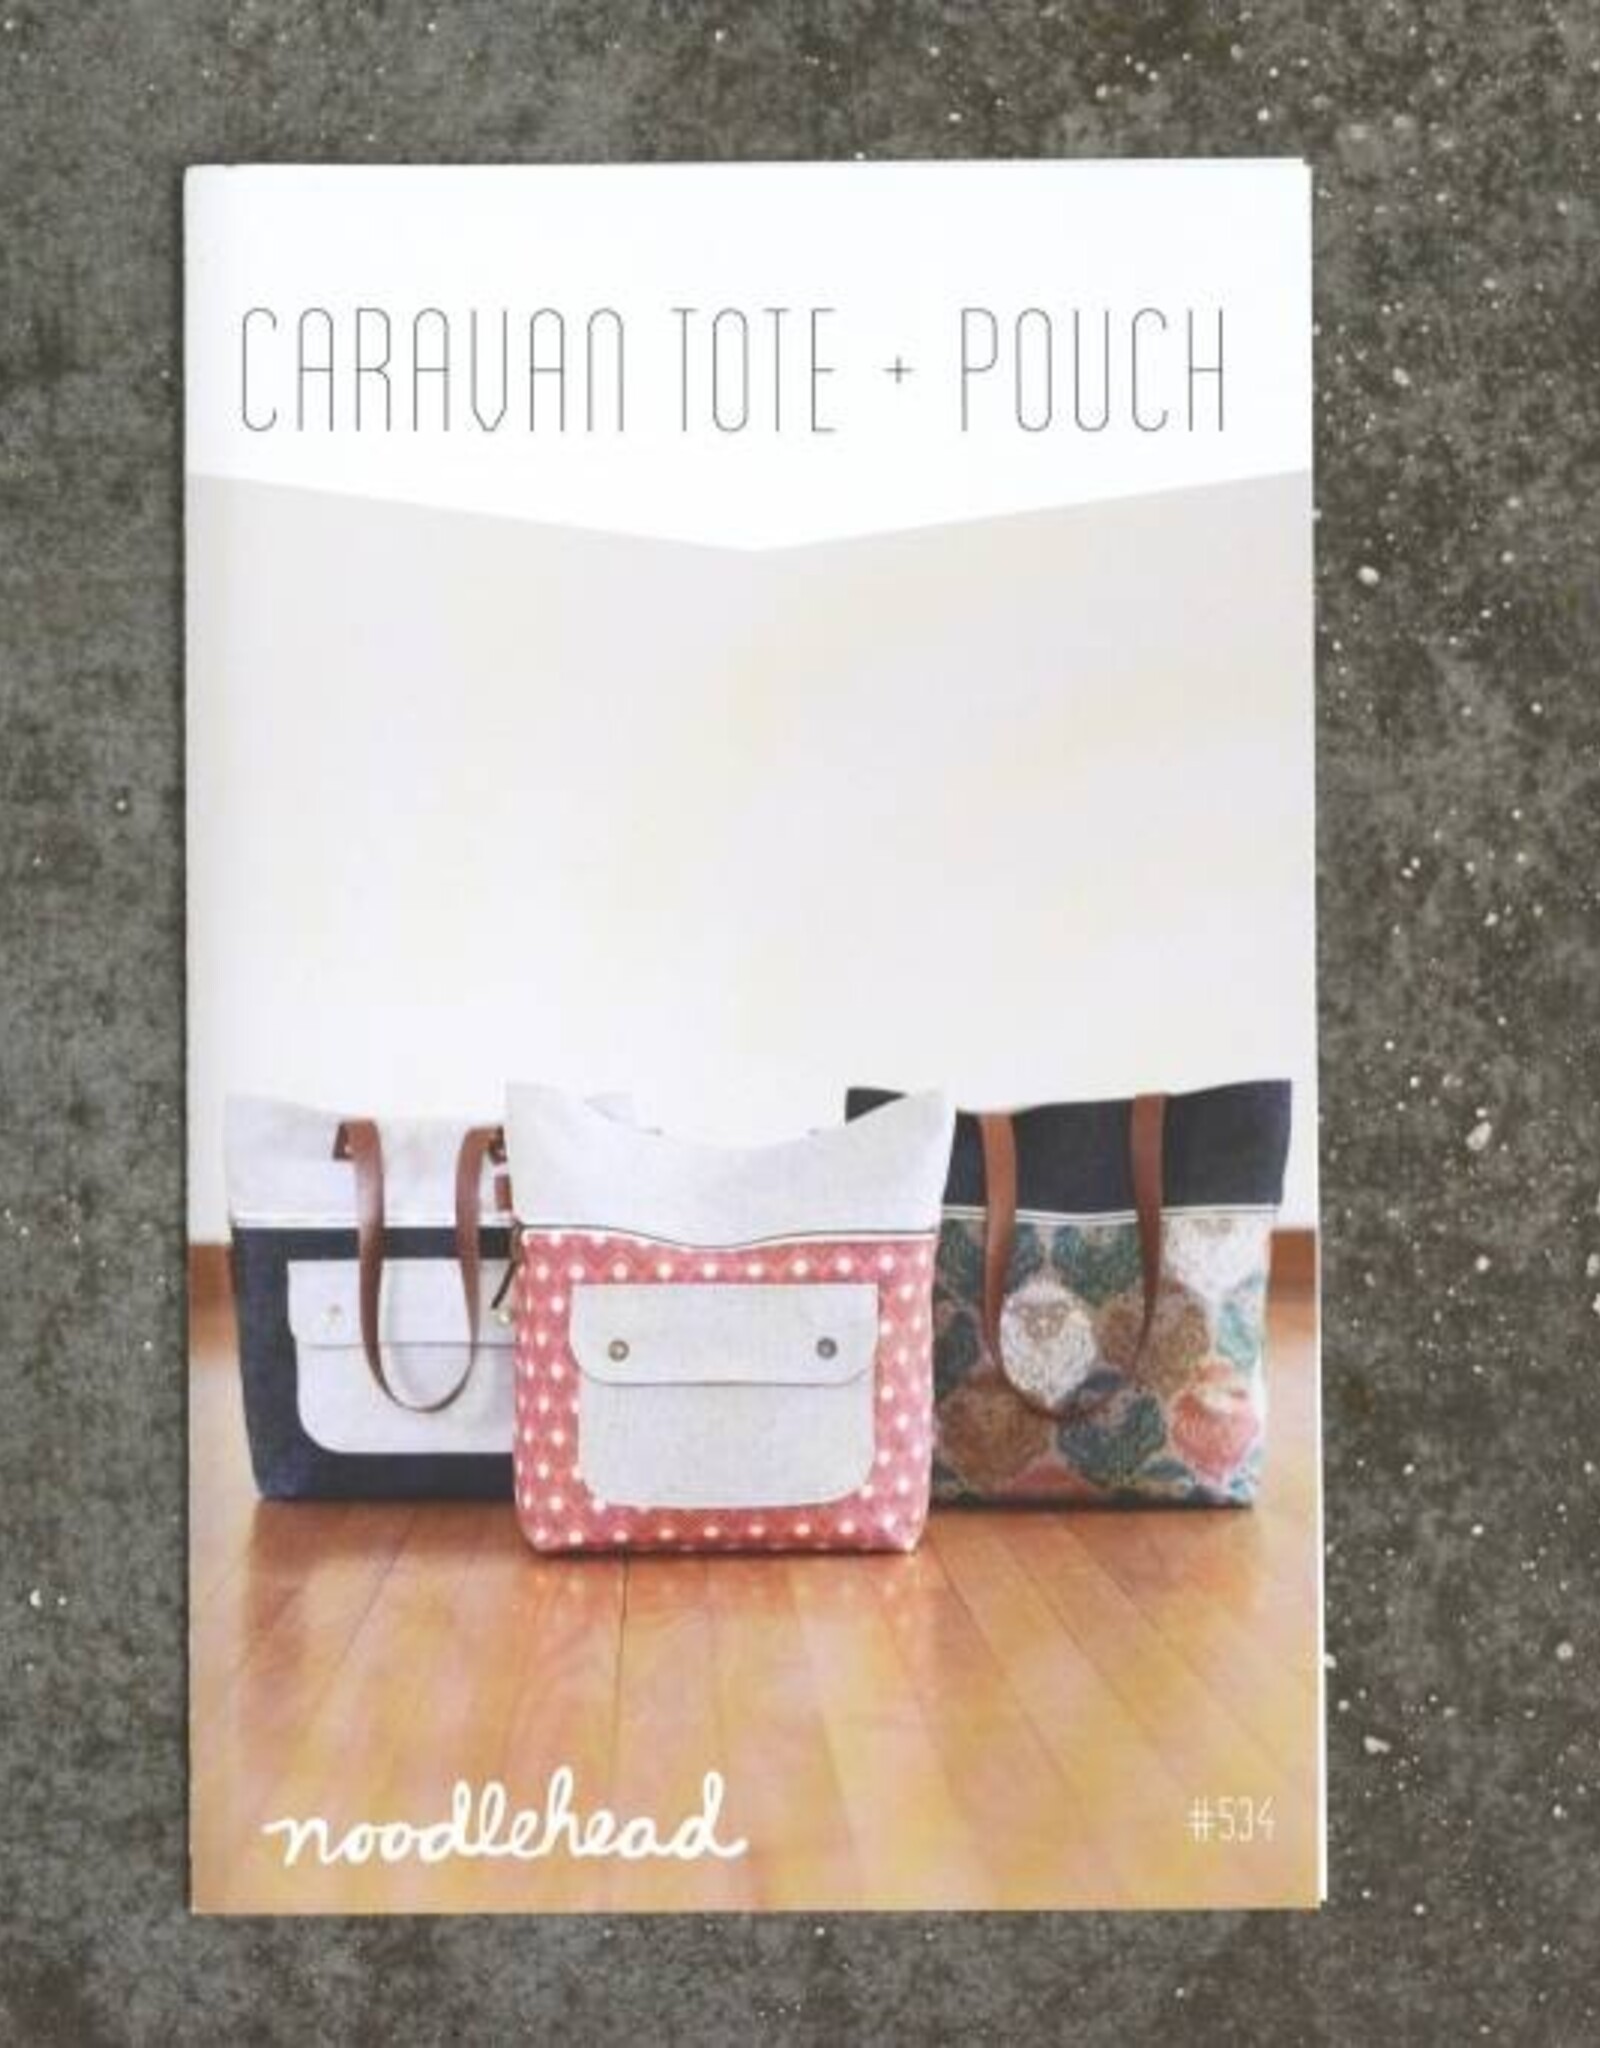 Noodlehead Caravan tote + pouch